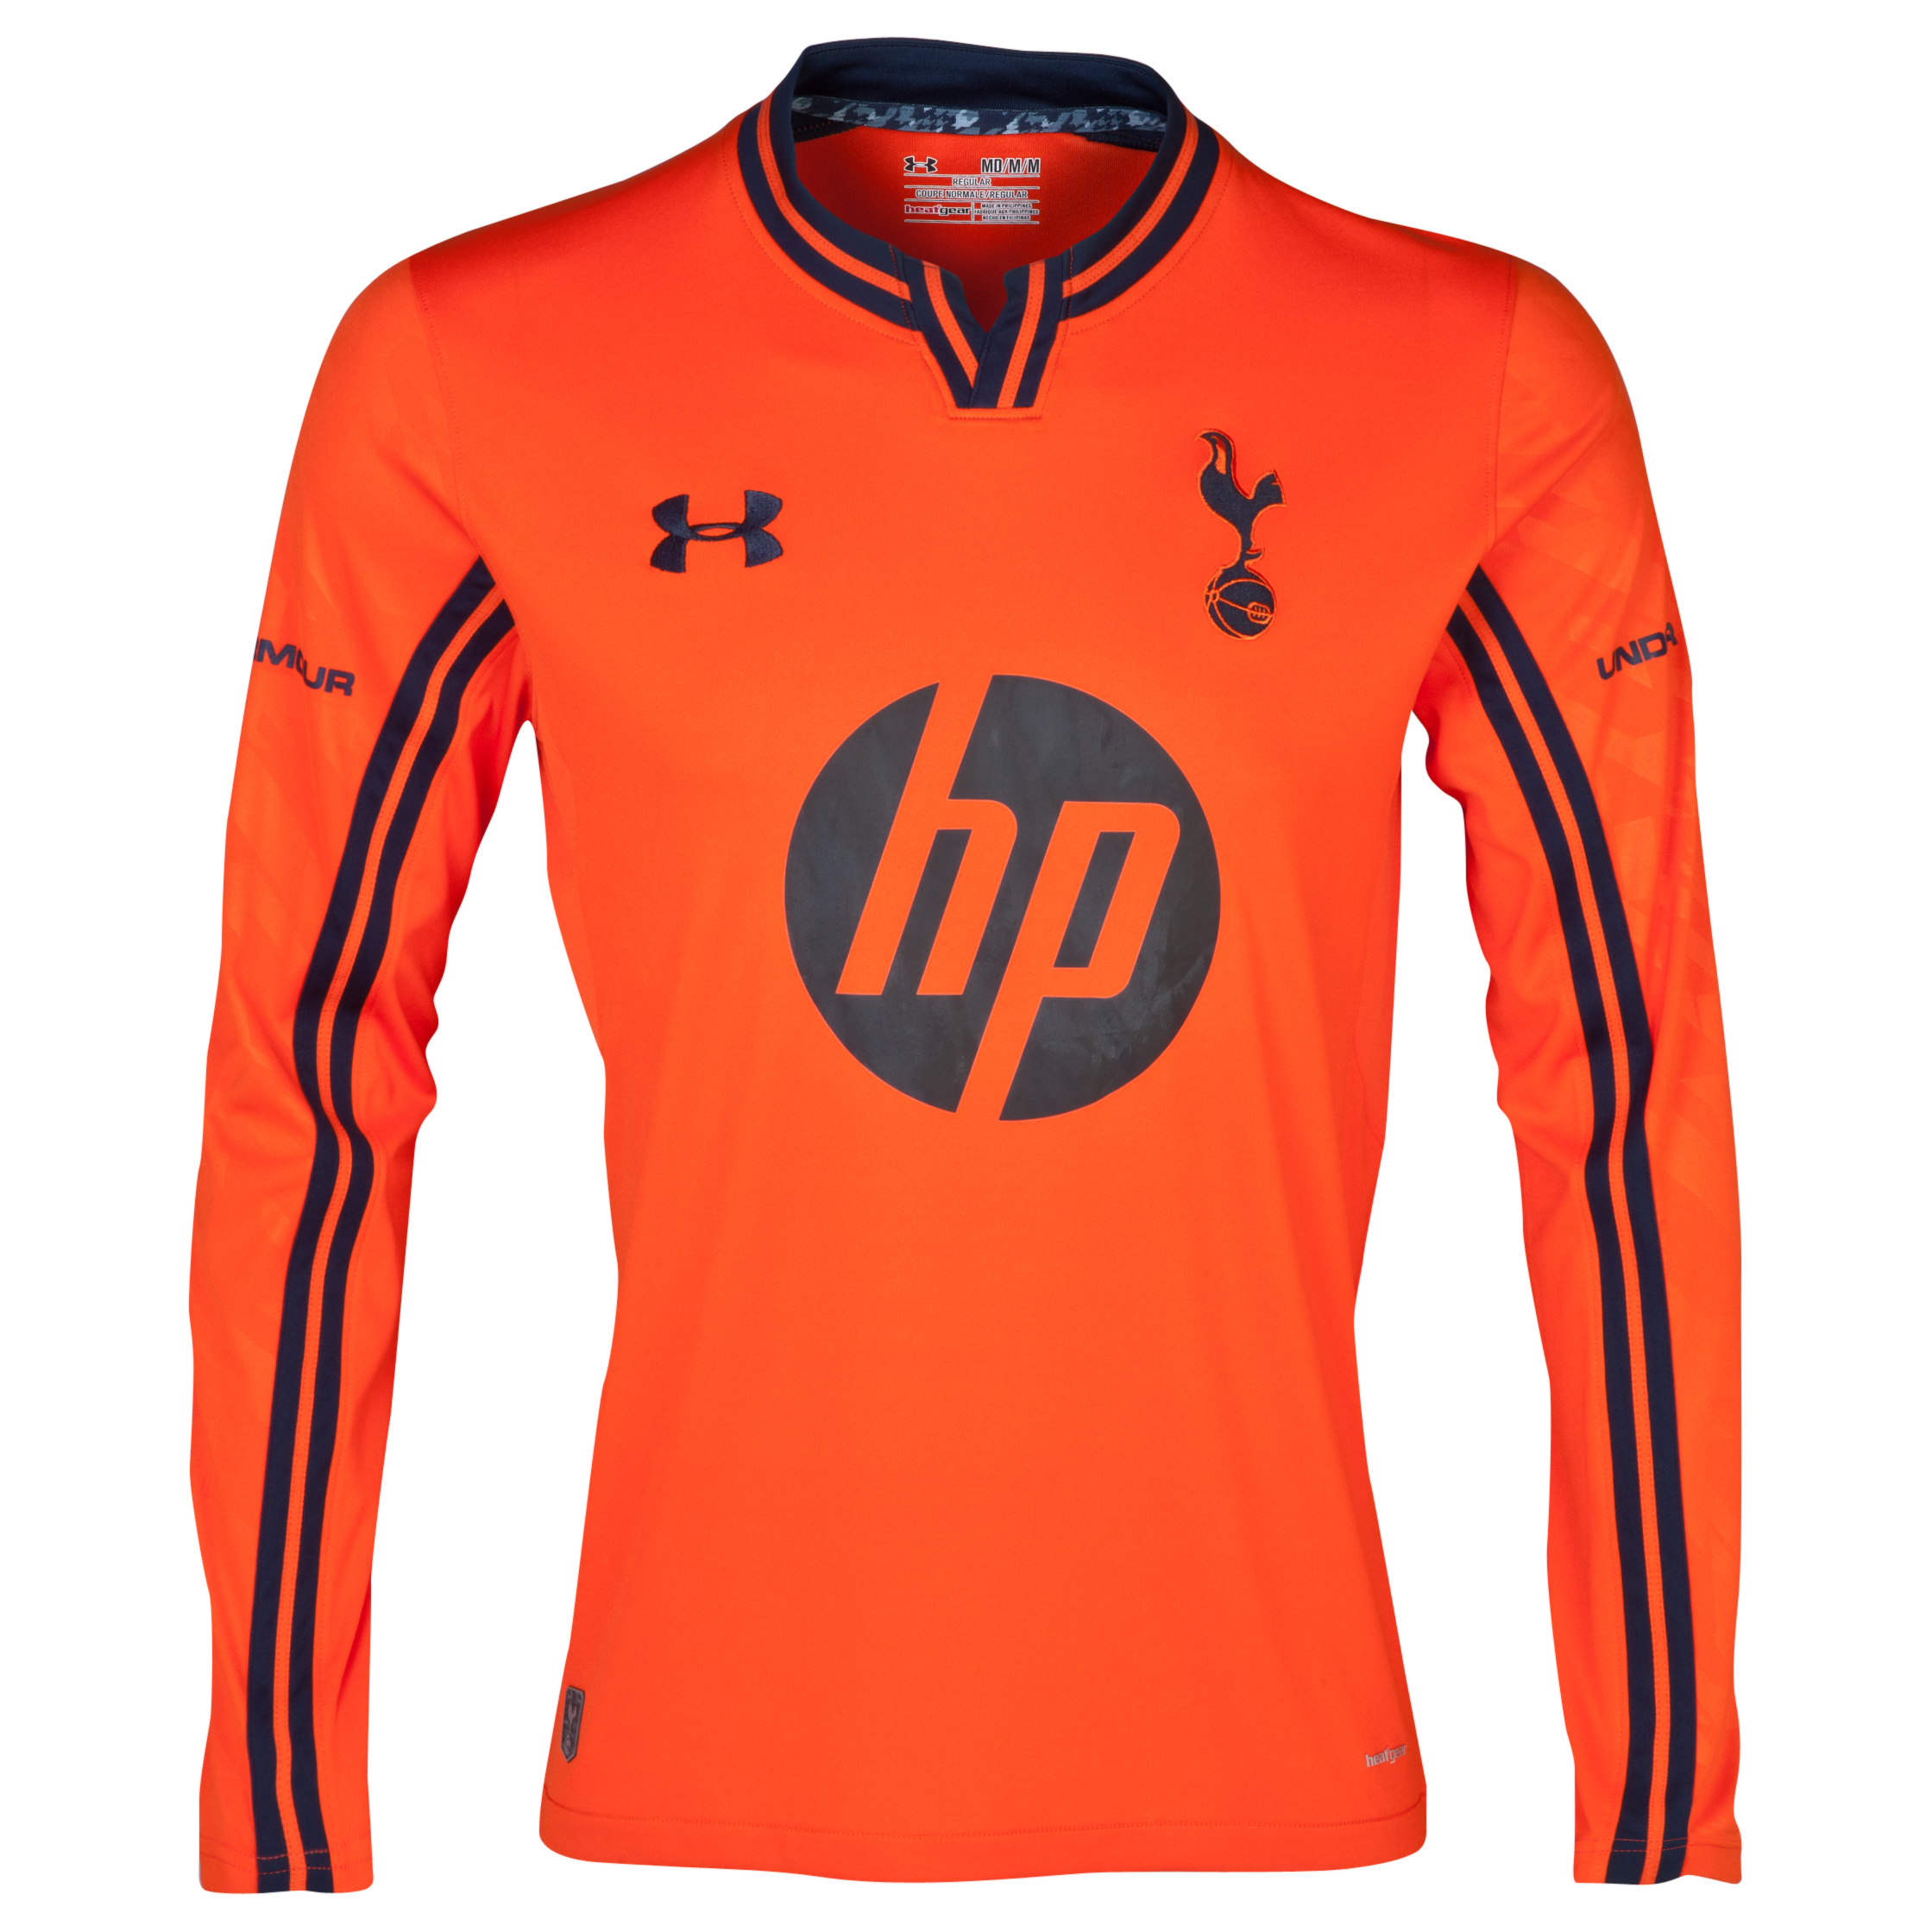 Tottenham Hotspur Home Goalkeeper Shirt 2013/14 - Youths